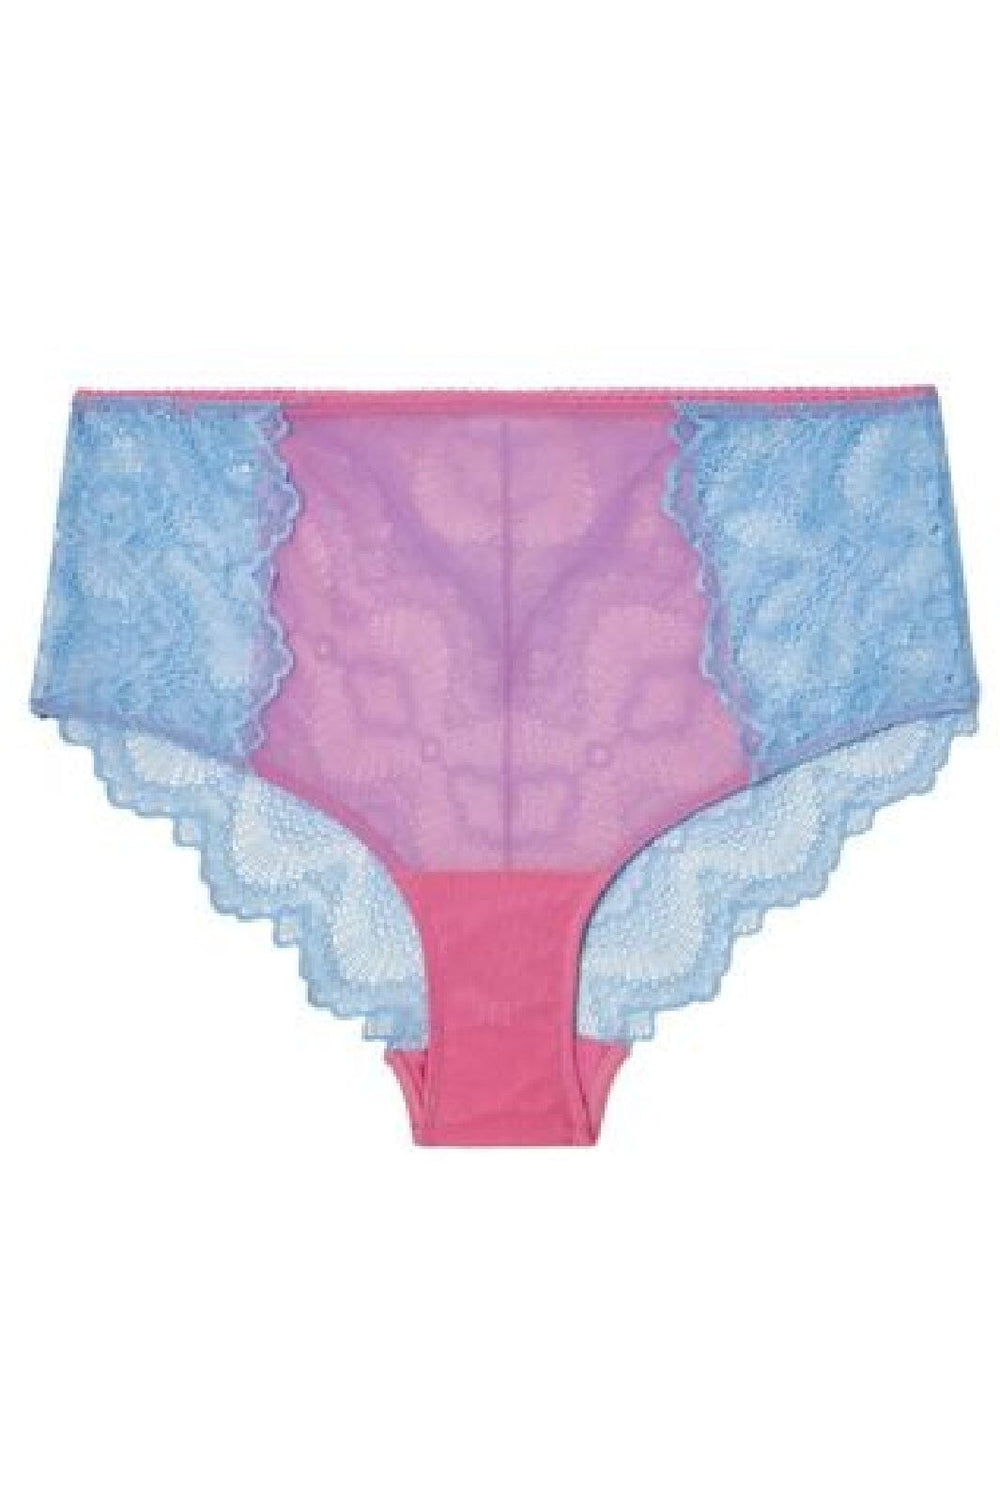 Understatement Underwear - Lace Mesh Highwaist Briefs - Light Blue / Candy Pink Underbukser 